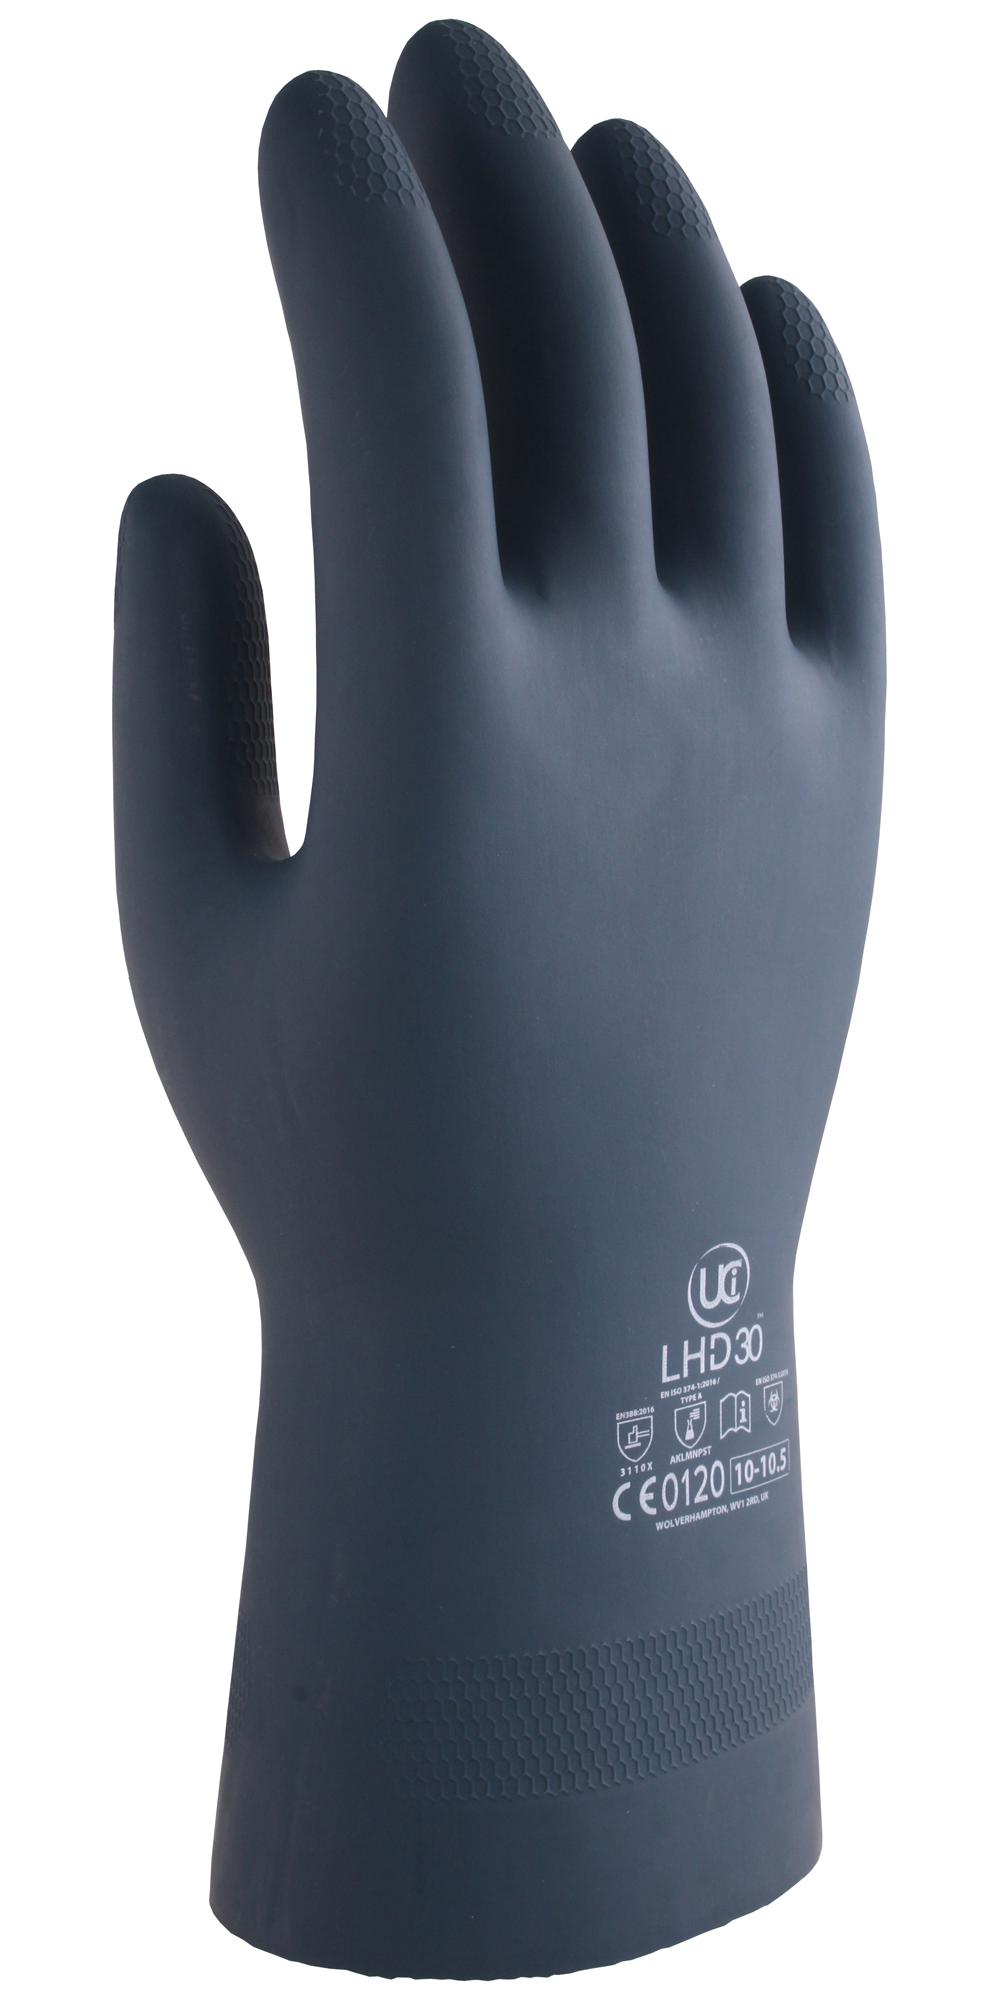 Uci G/lhd30/bk/10 Gloves, Rubber/neoprene, Black, Xl